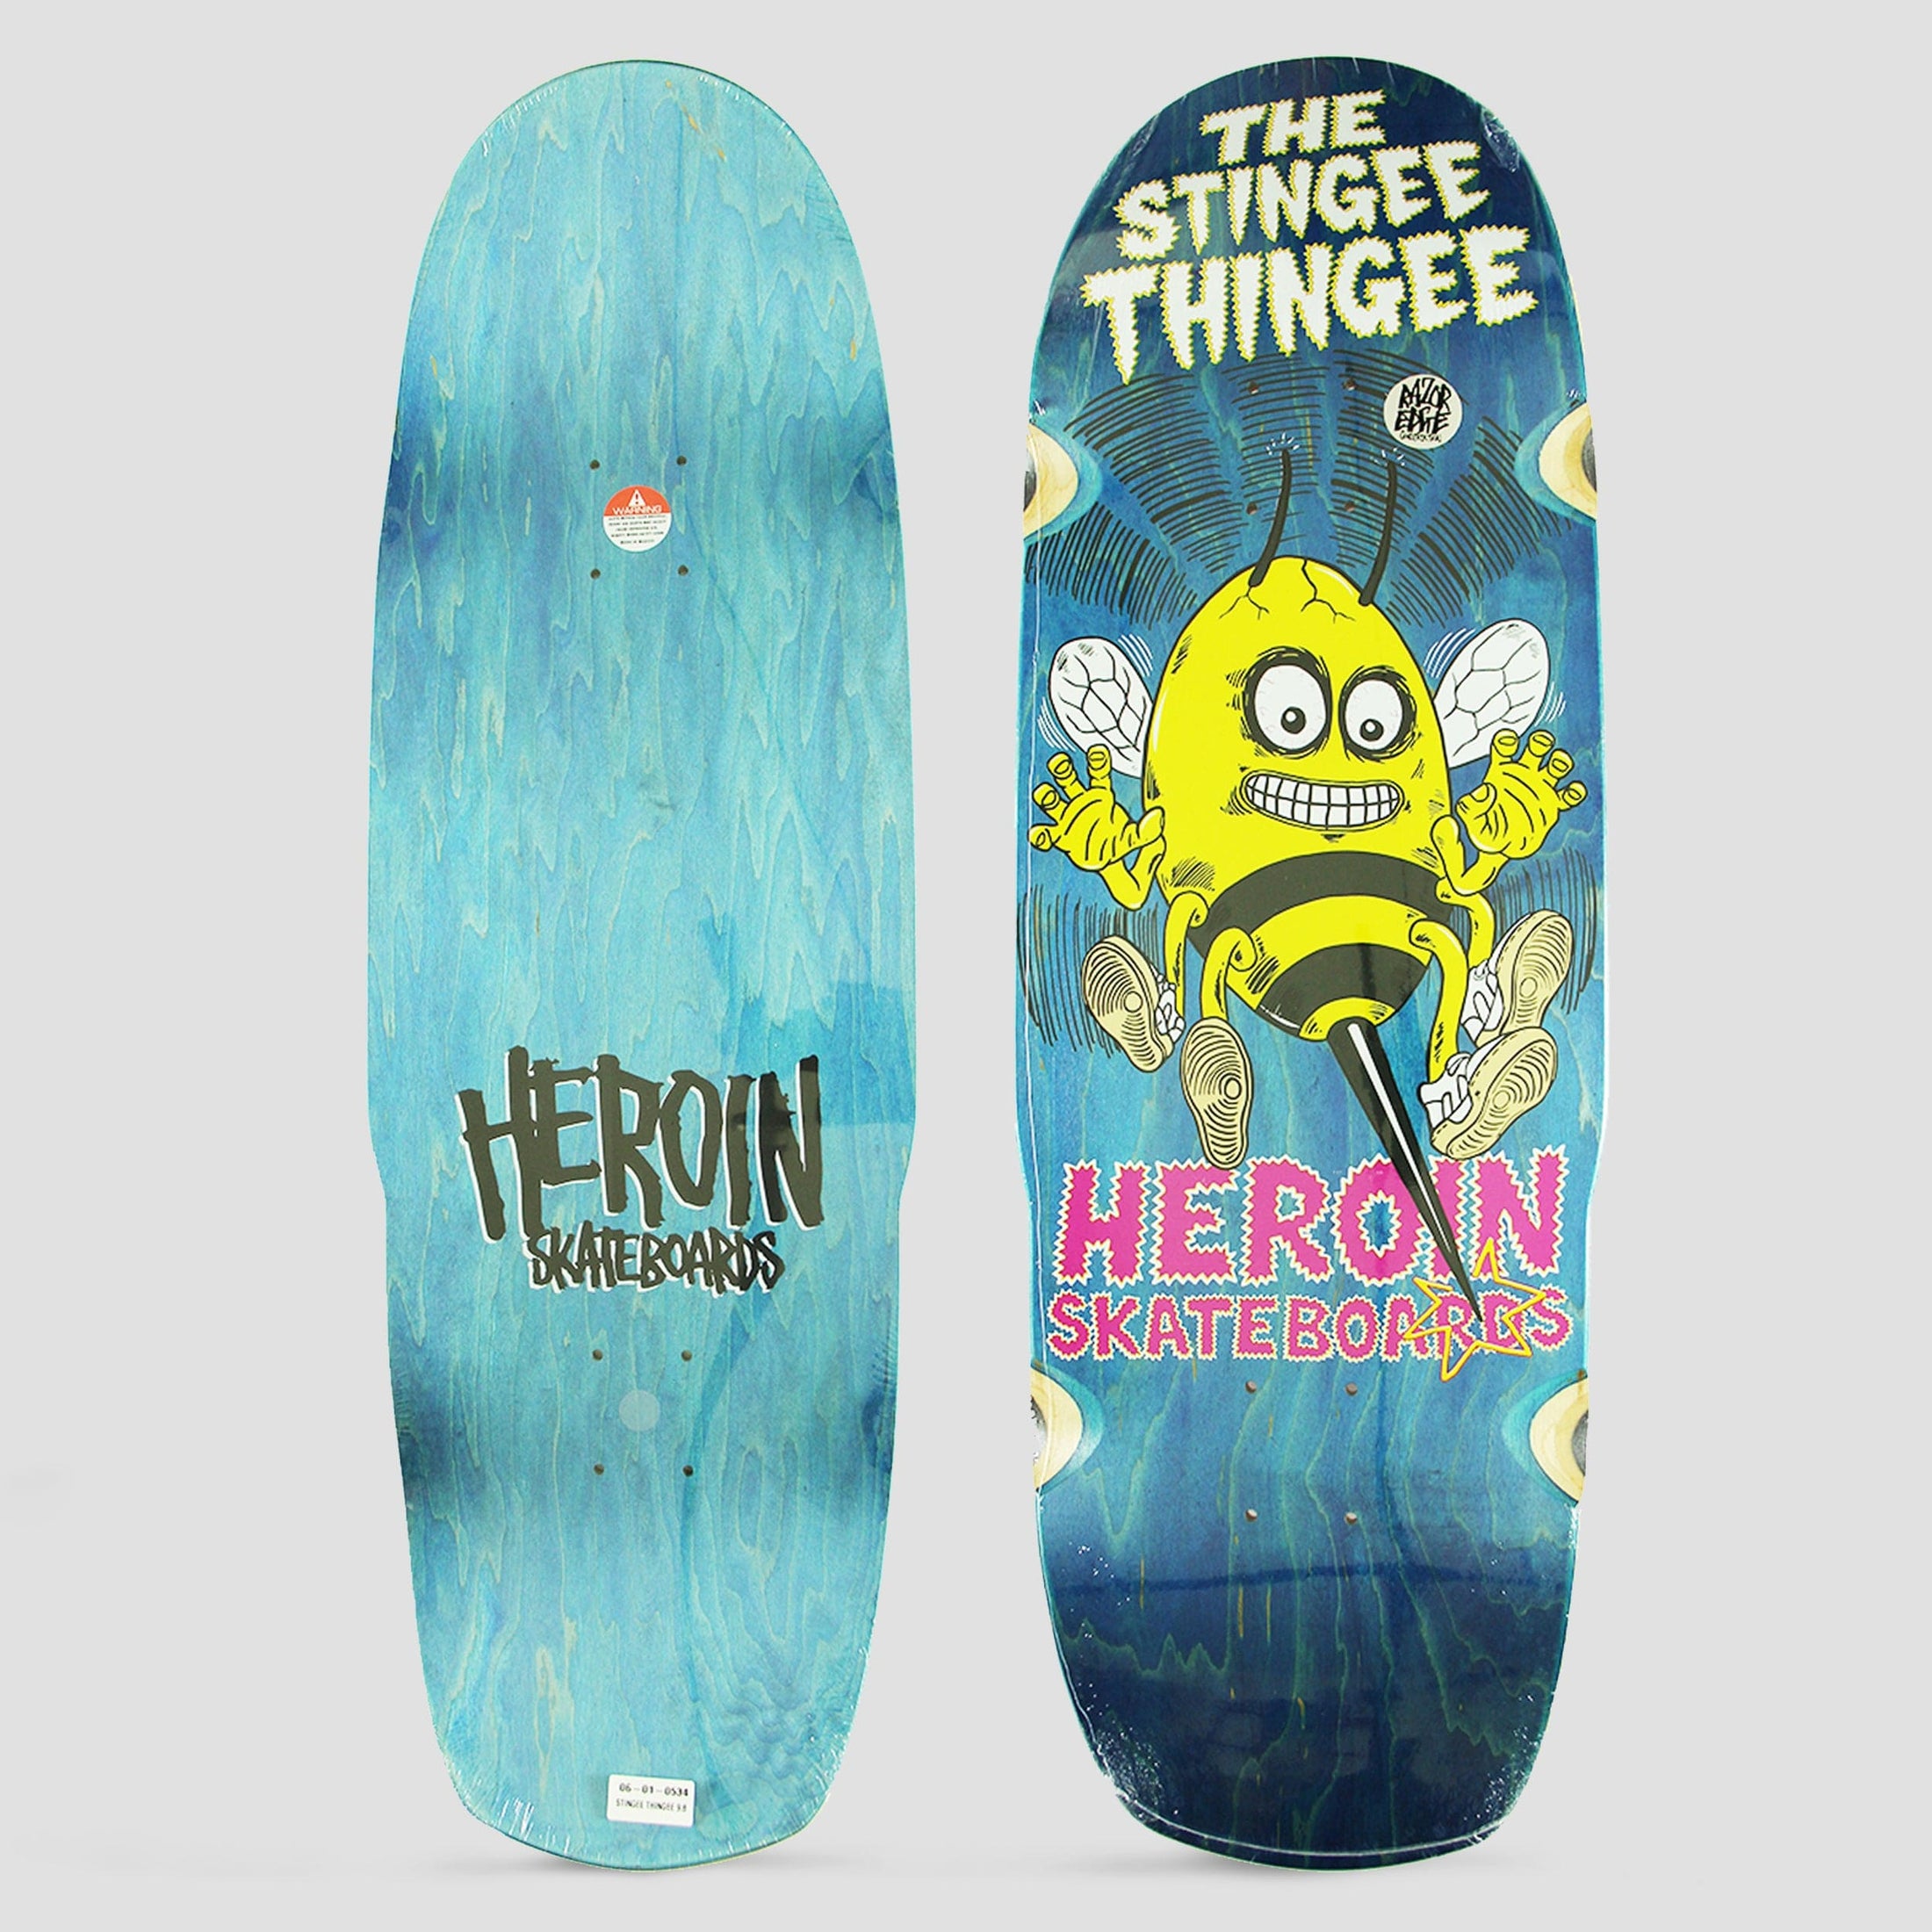 Heroin 9.8 Stingee Thingee Skateboard Deck